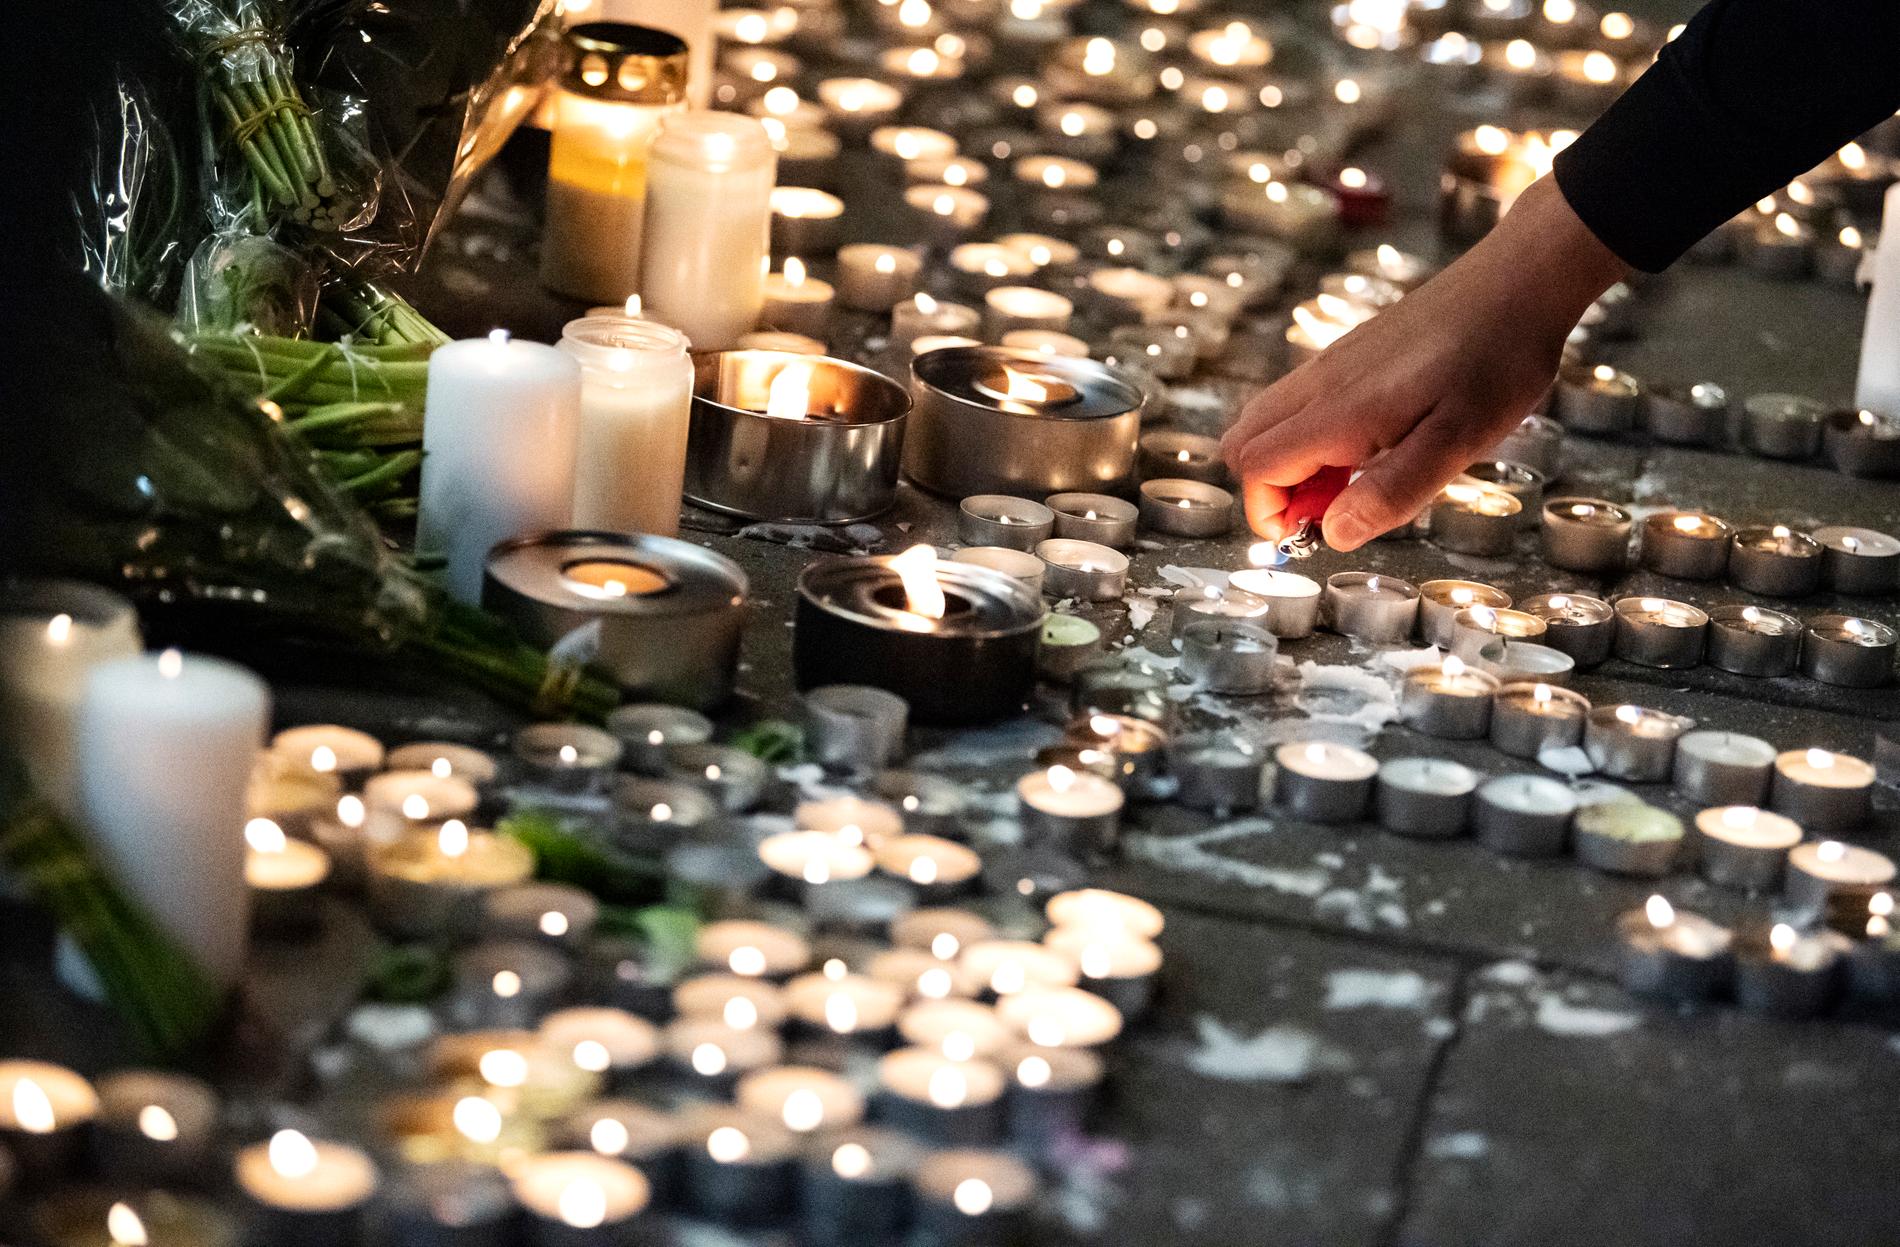 För lite mer än två veckor sedan sköts Jaffar, 15, till döds på Möllevången.